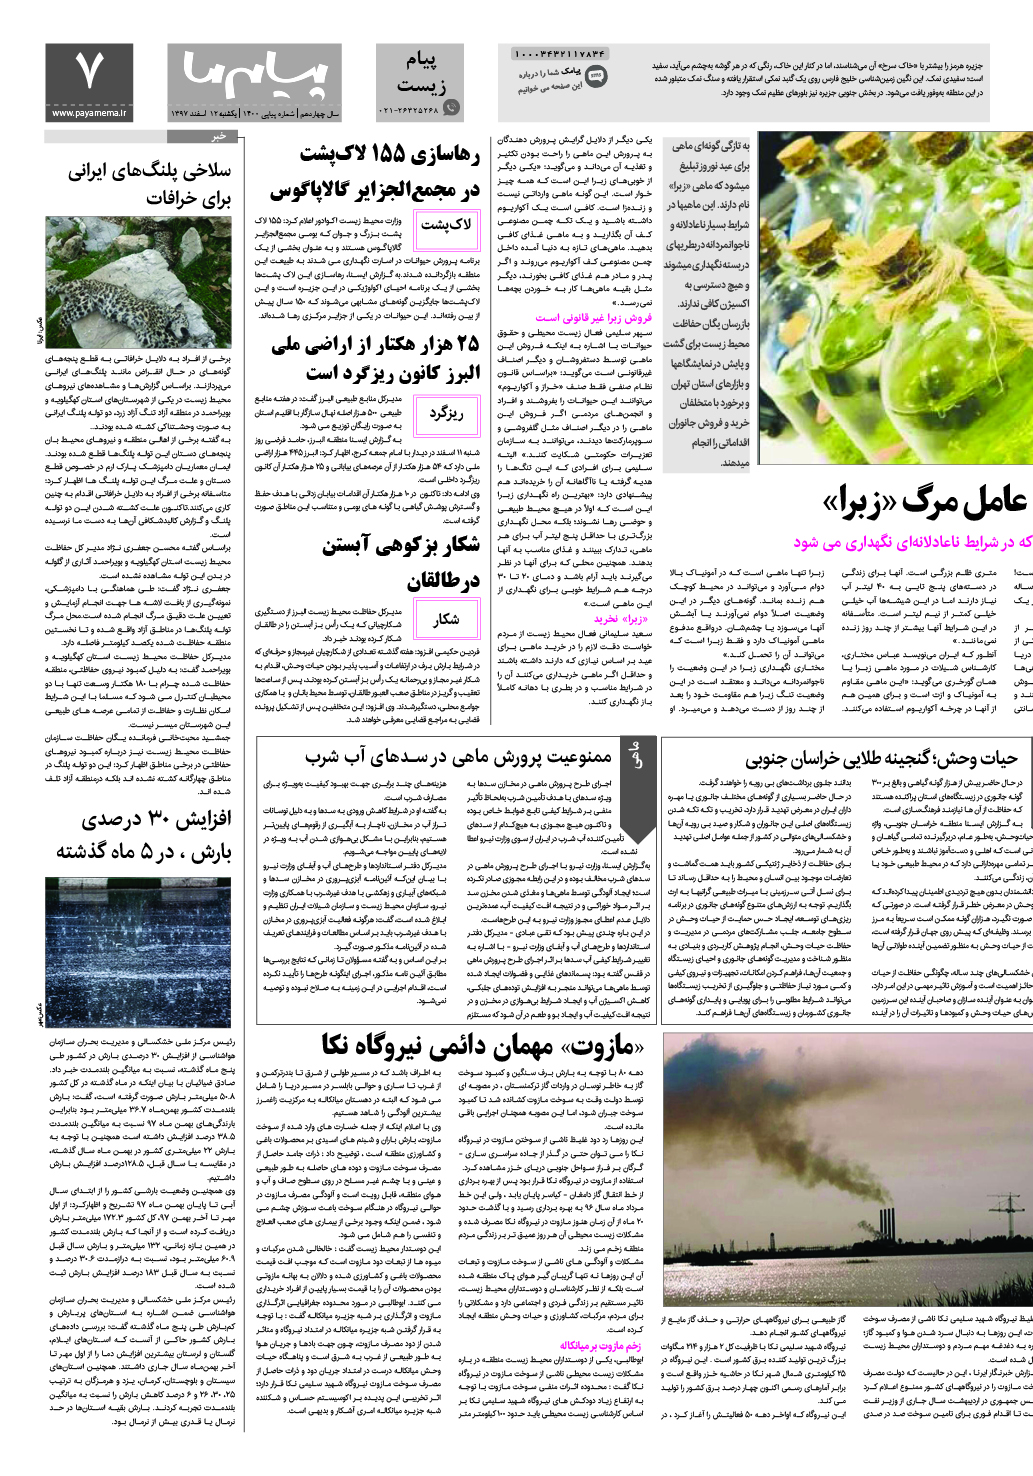 صفحه پیام زیست شماره 1400 روزنامه پیام ما